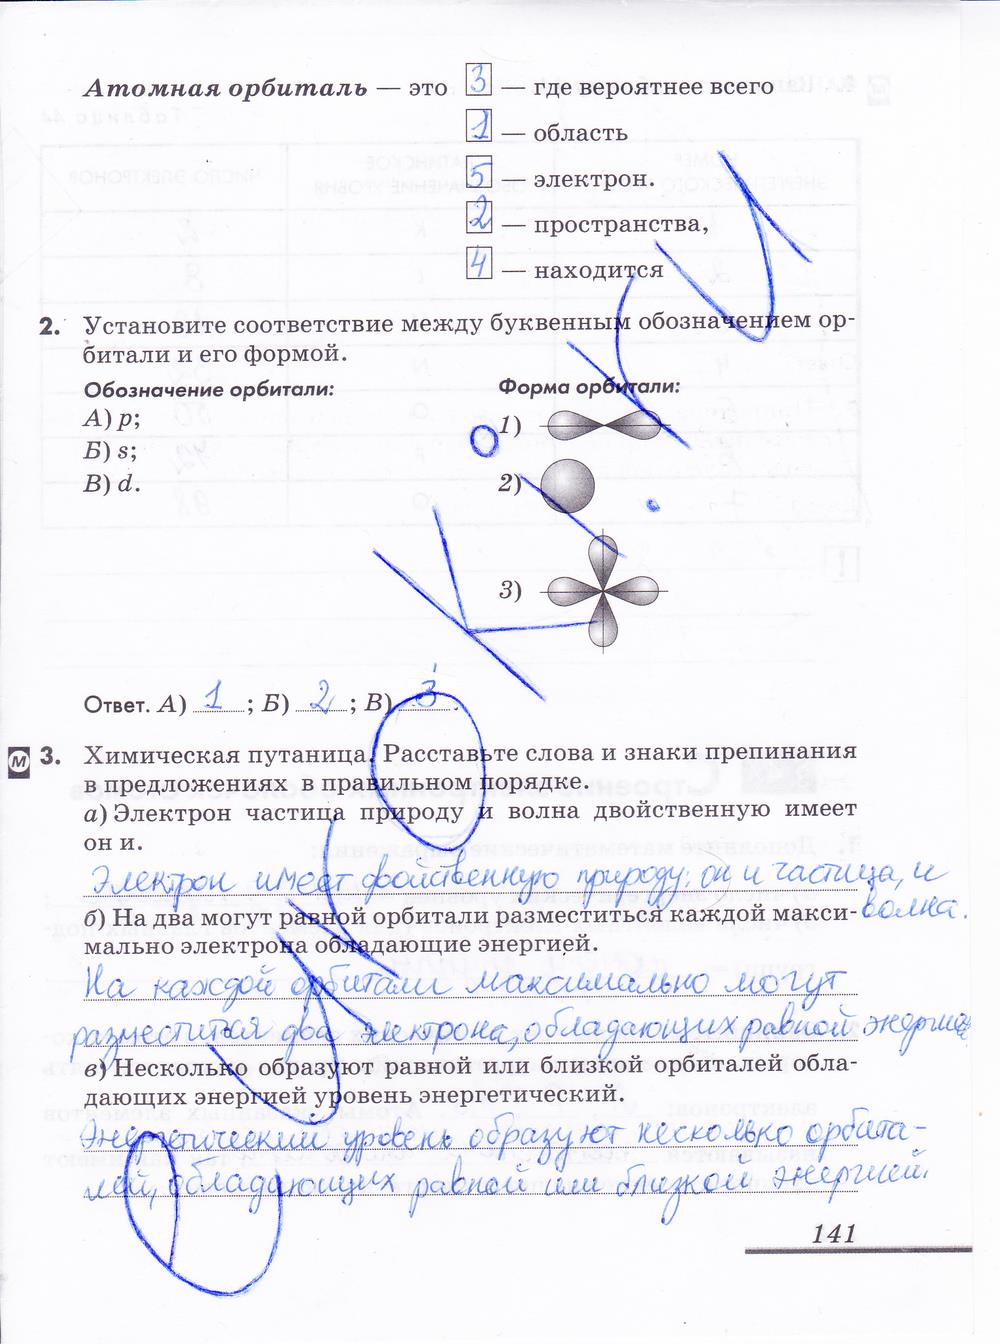 гдз 8 класс рабочая тетрадь страница 141 химия Еремин, Дроздов